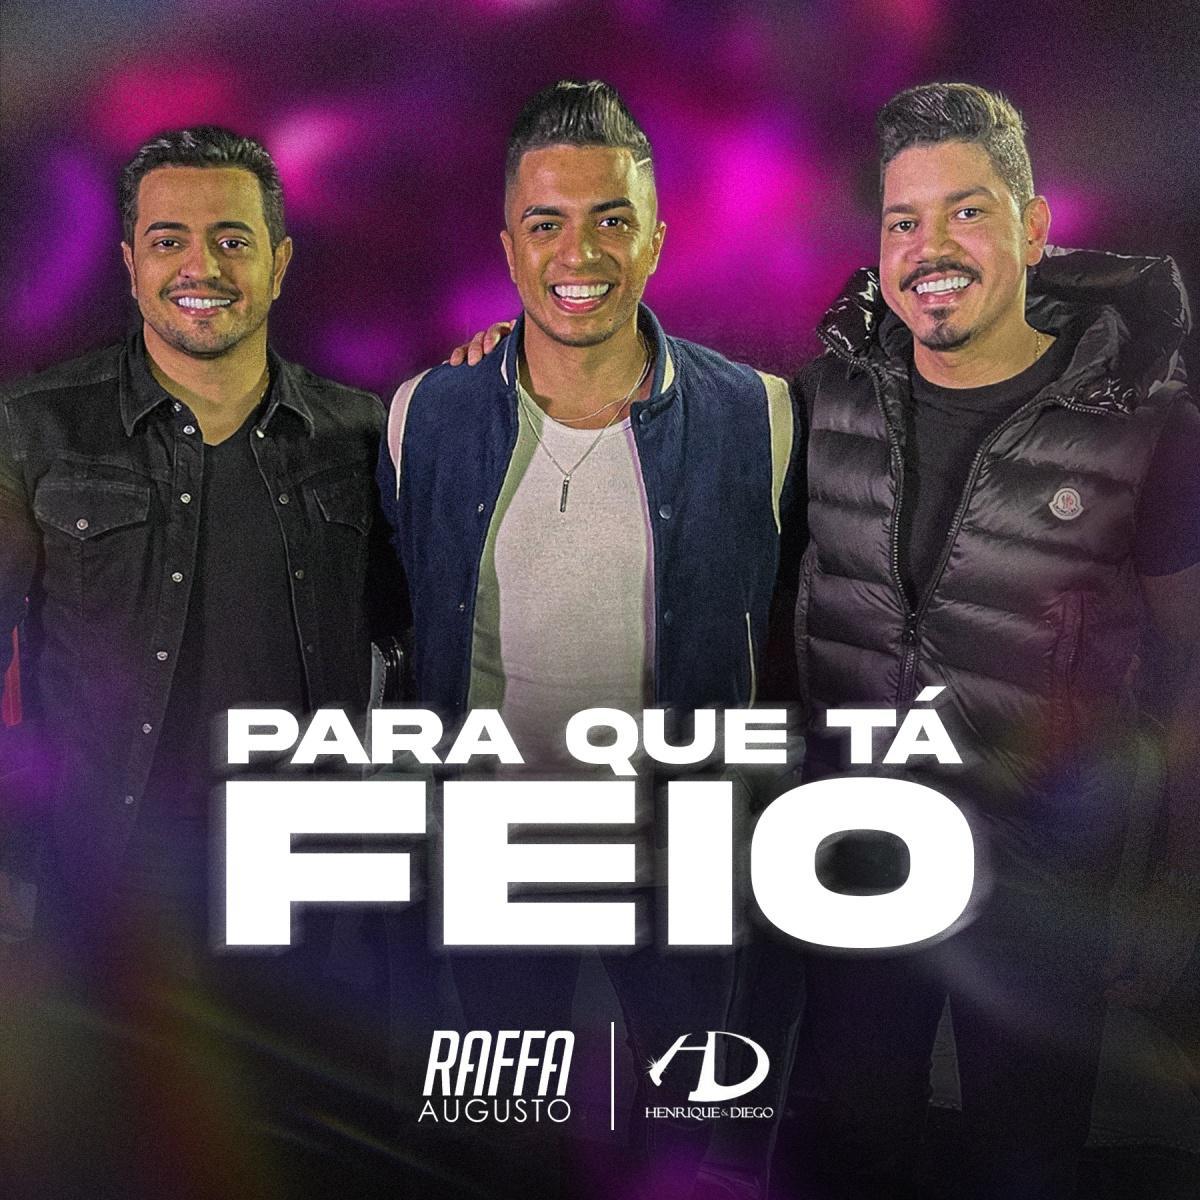 Raffa Augusto e Henrique e Diego lançam feat em Para Que Tá Feio